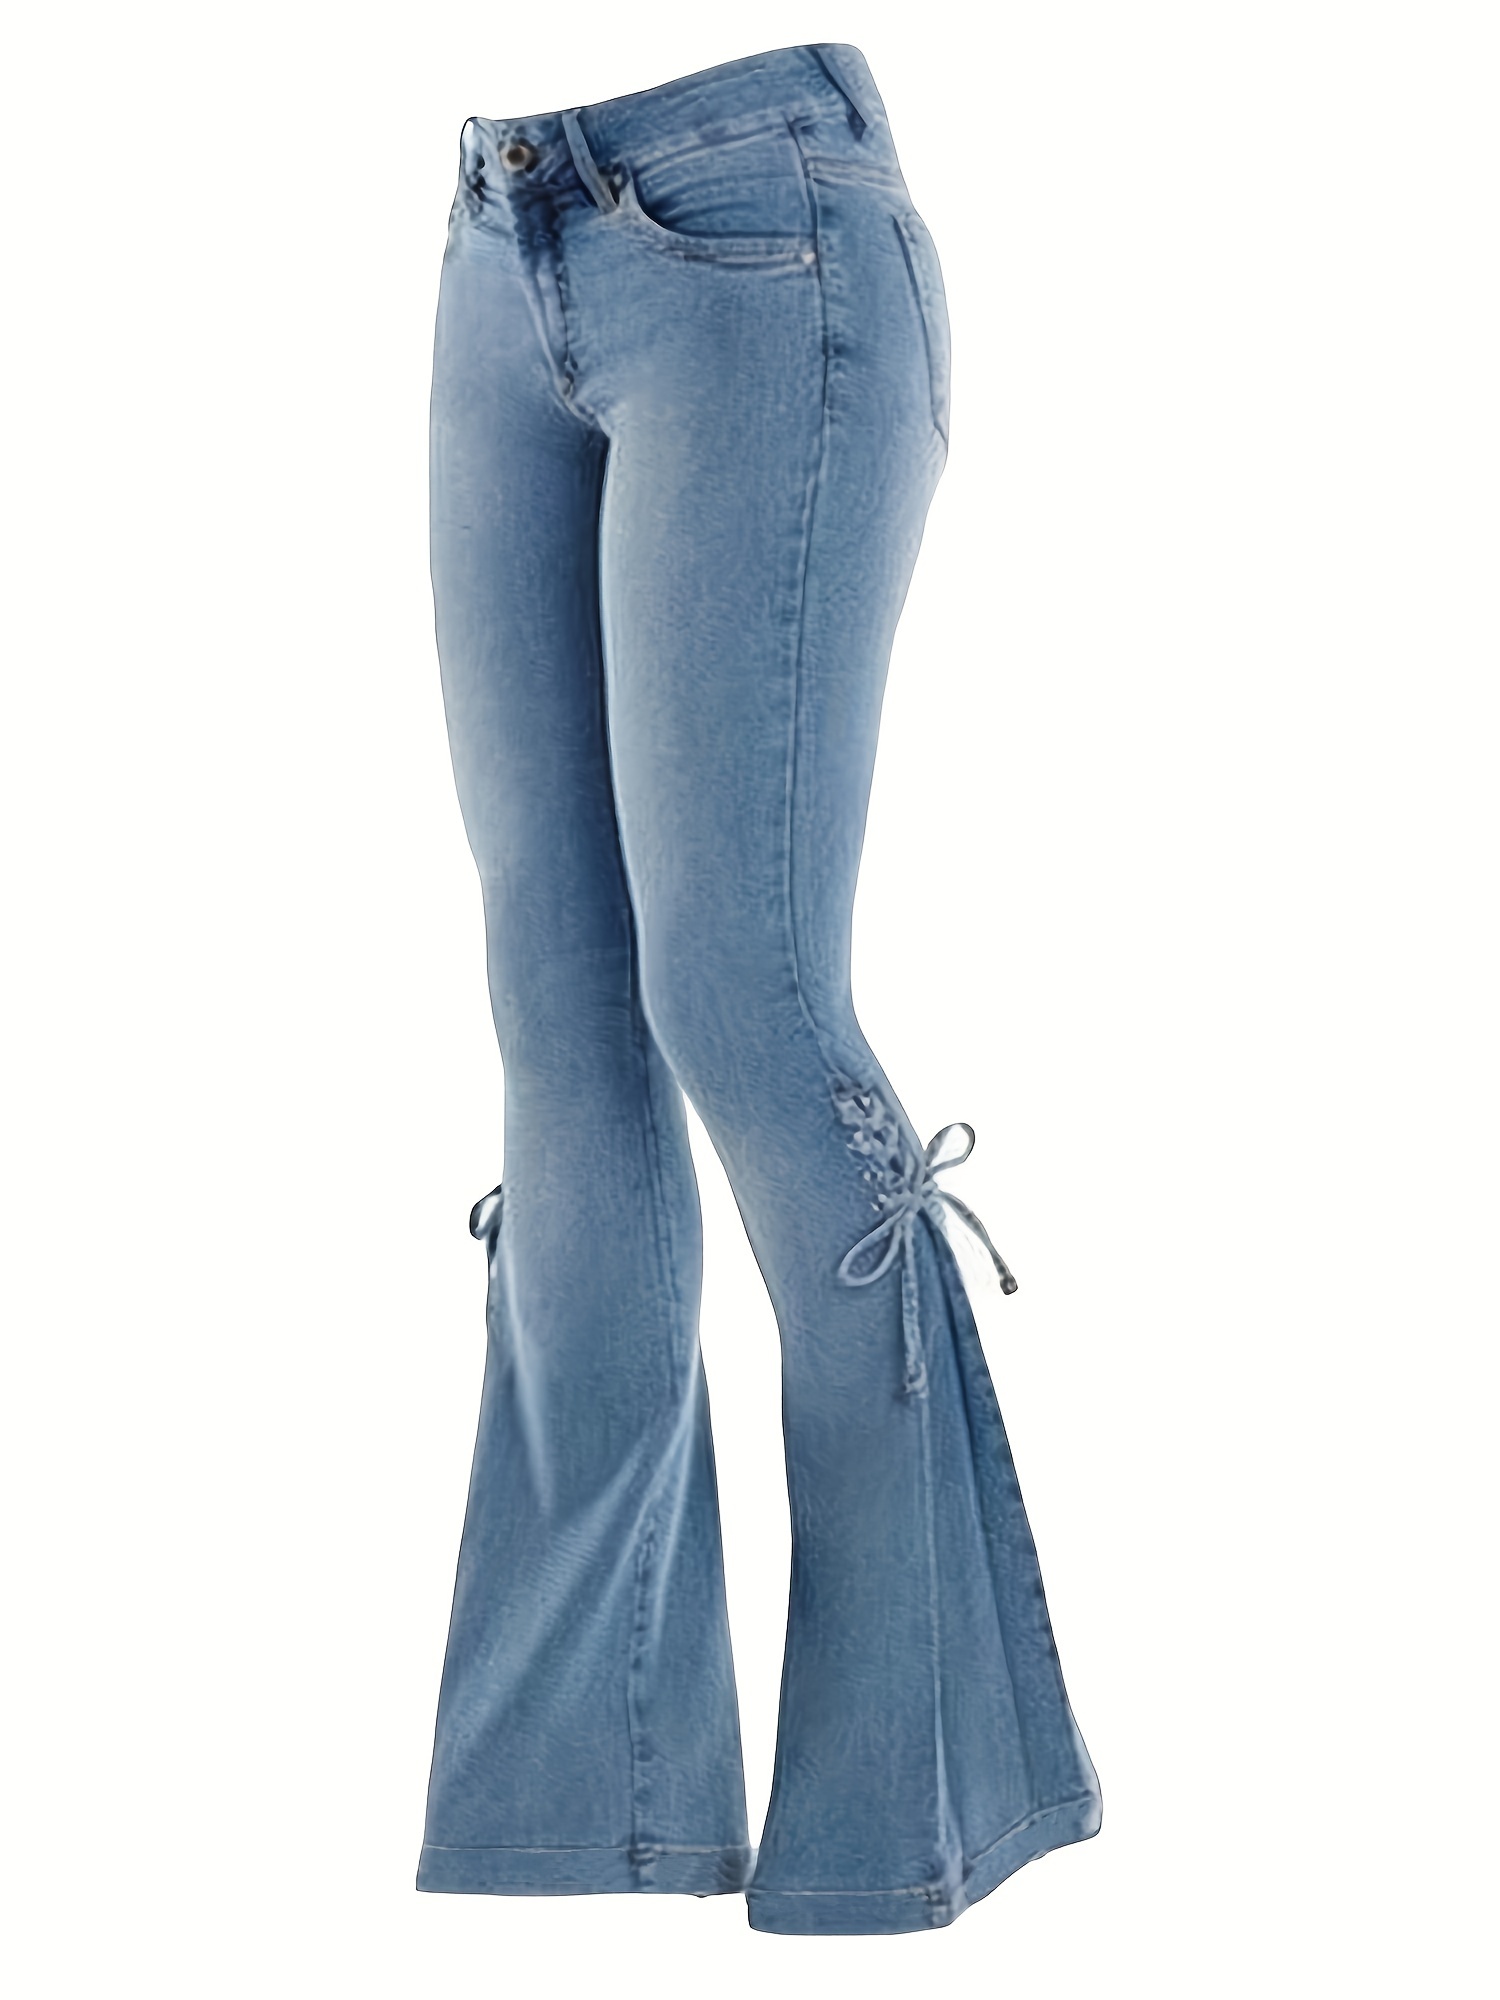 Buy Women's High Waist Jeans Denim/layered Ruffle Bell-bottoms